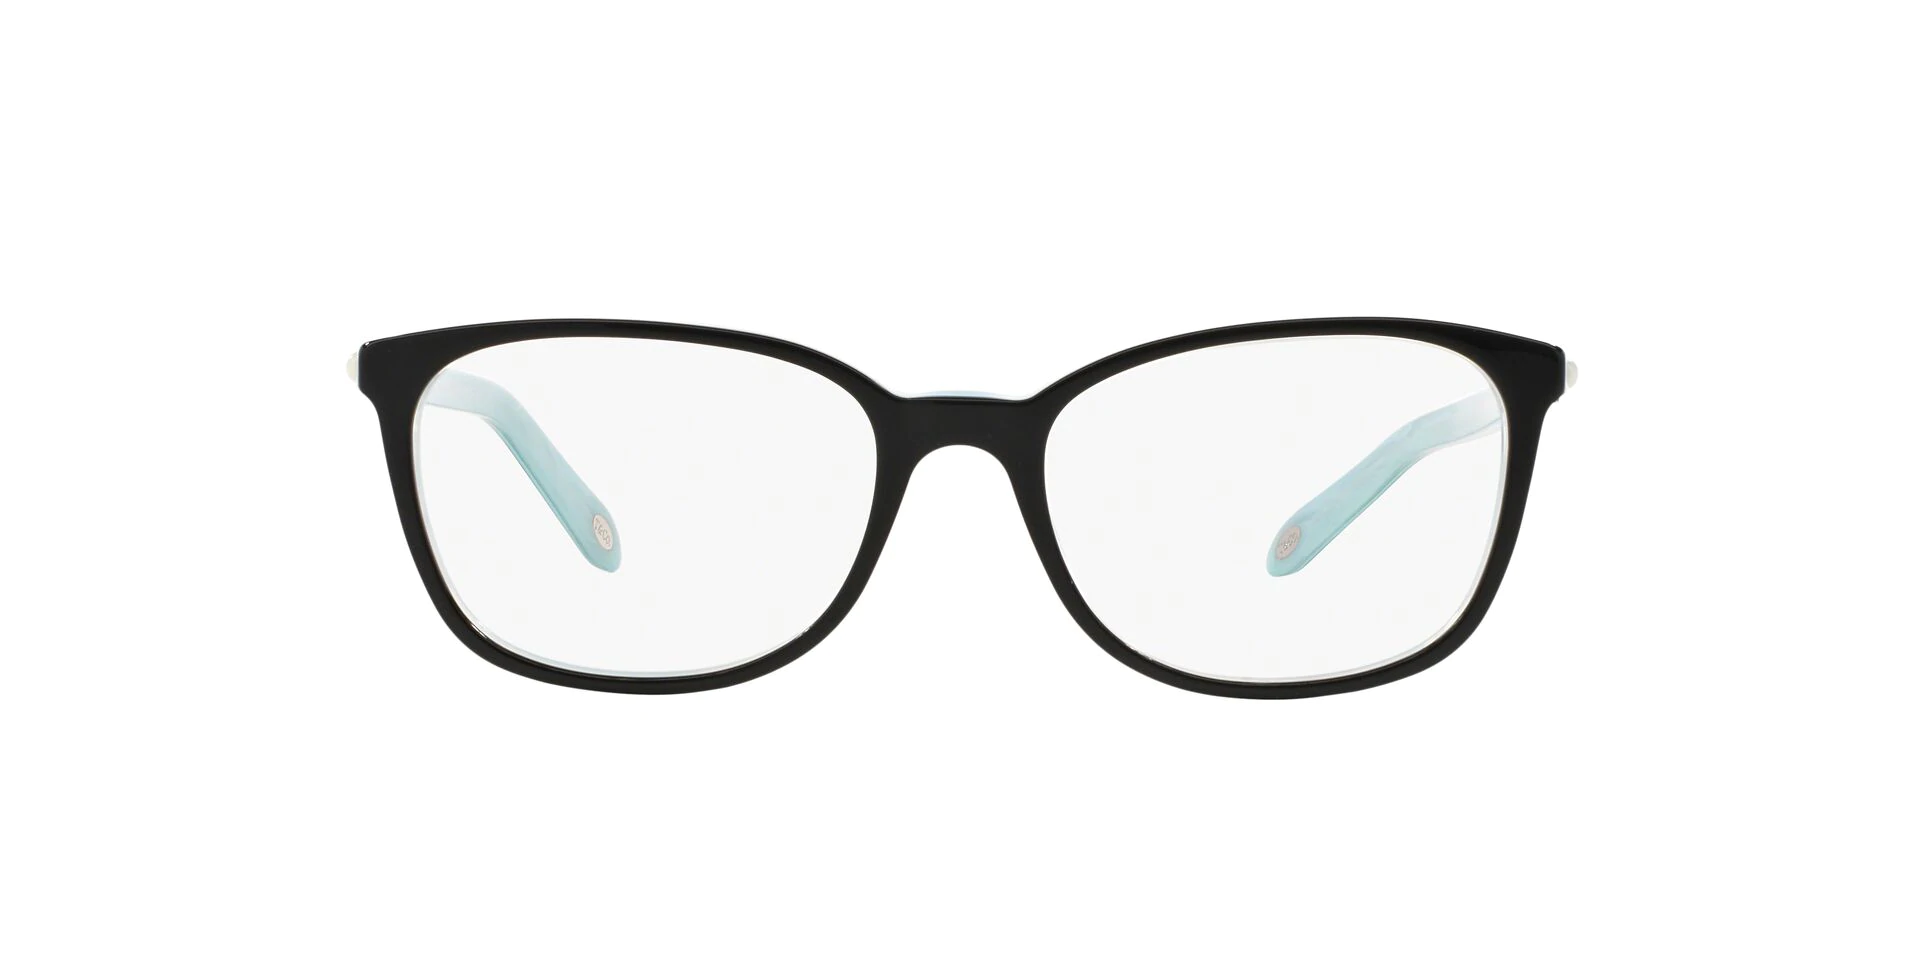 Tiffany Eyeglasses Black Oval Women Eyeglasses 53mm